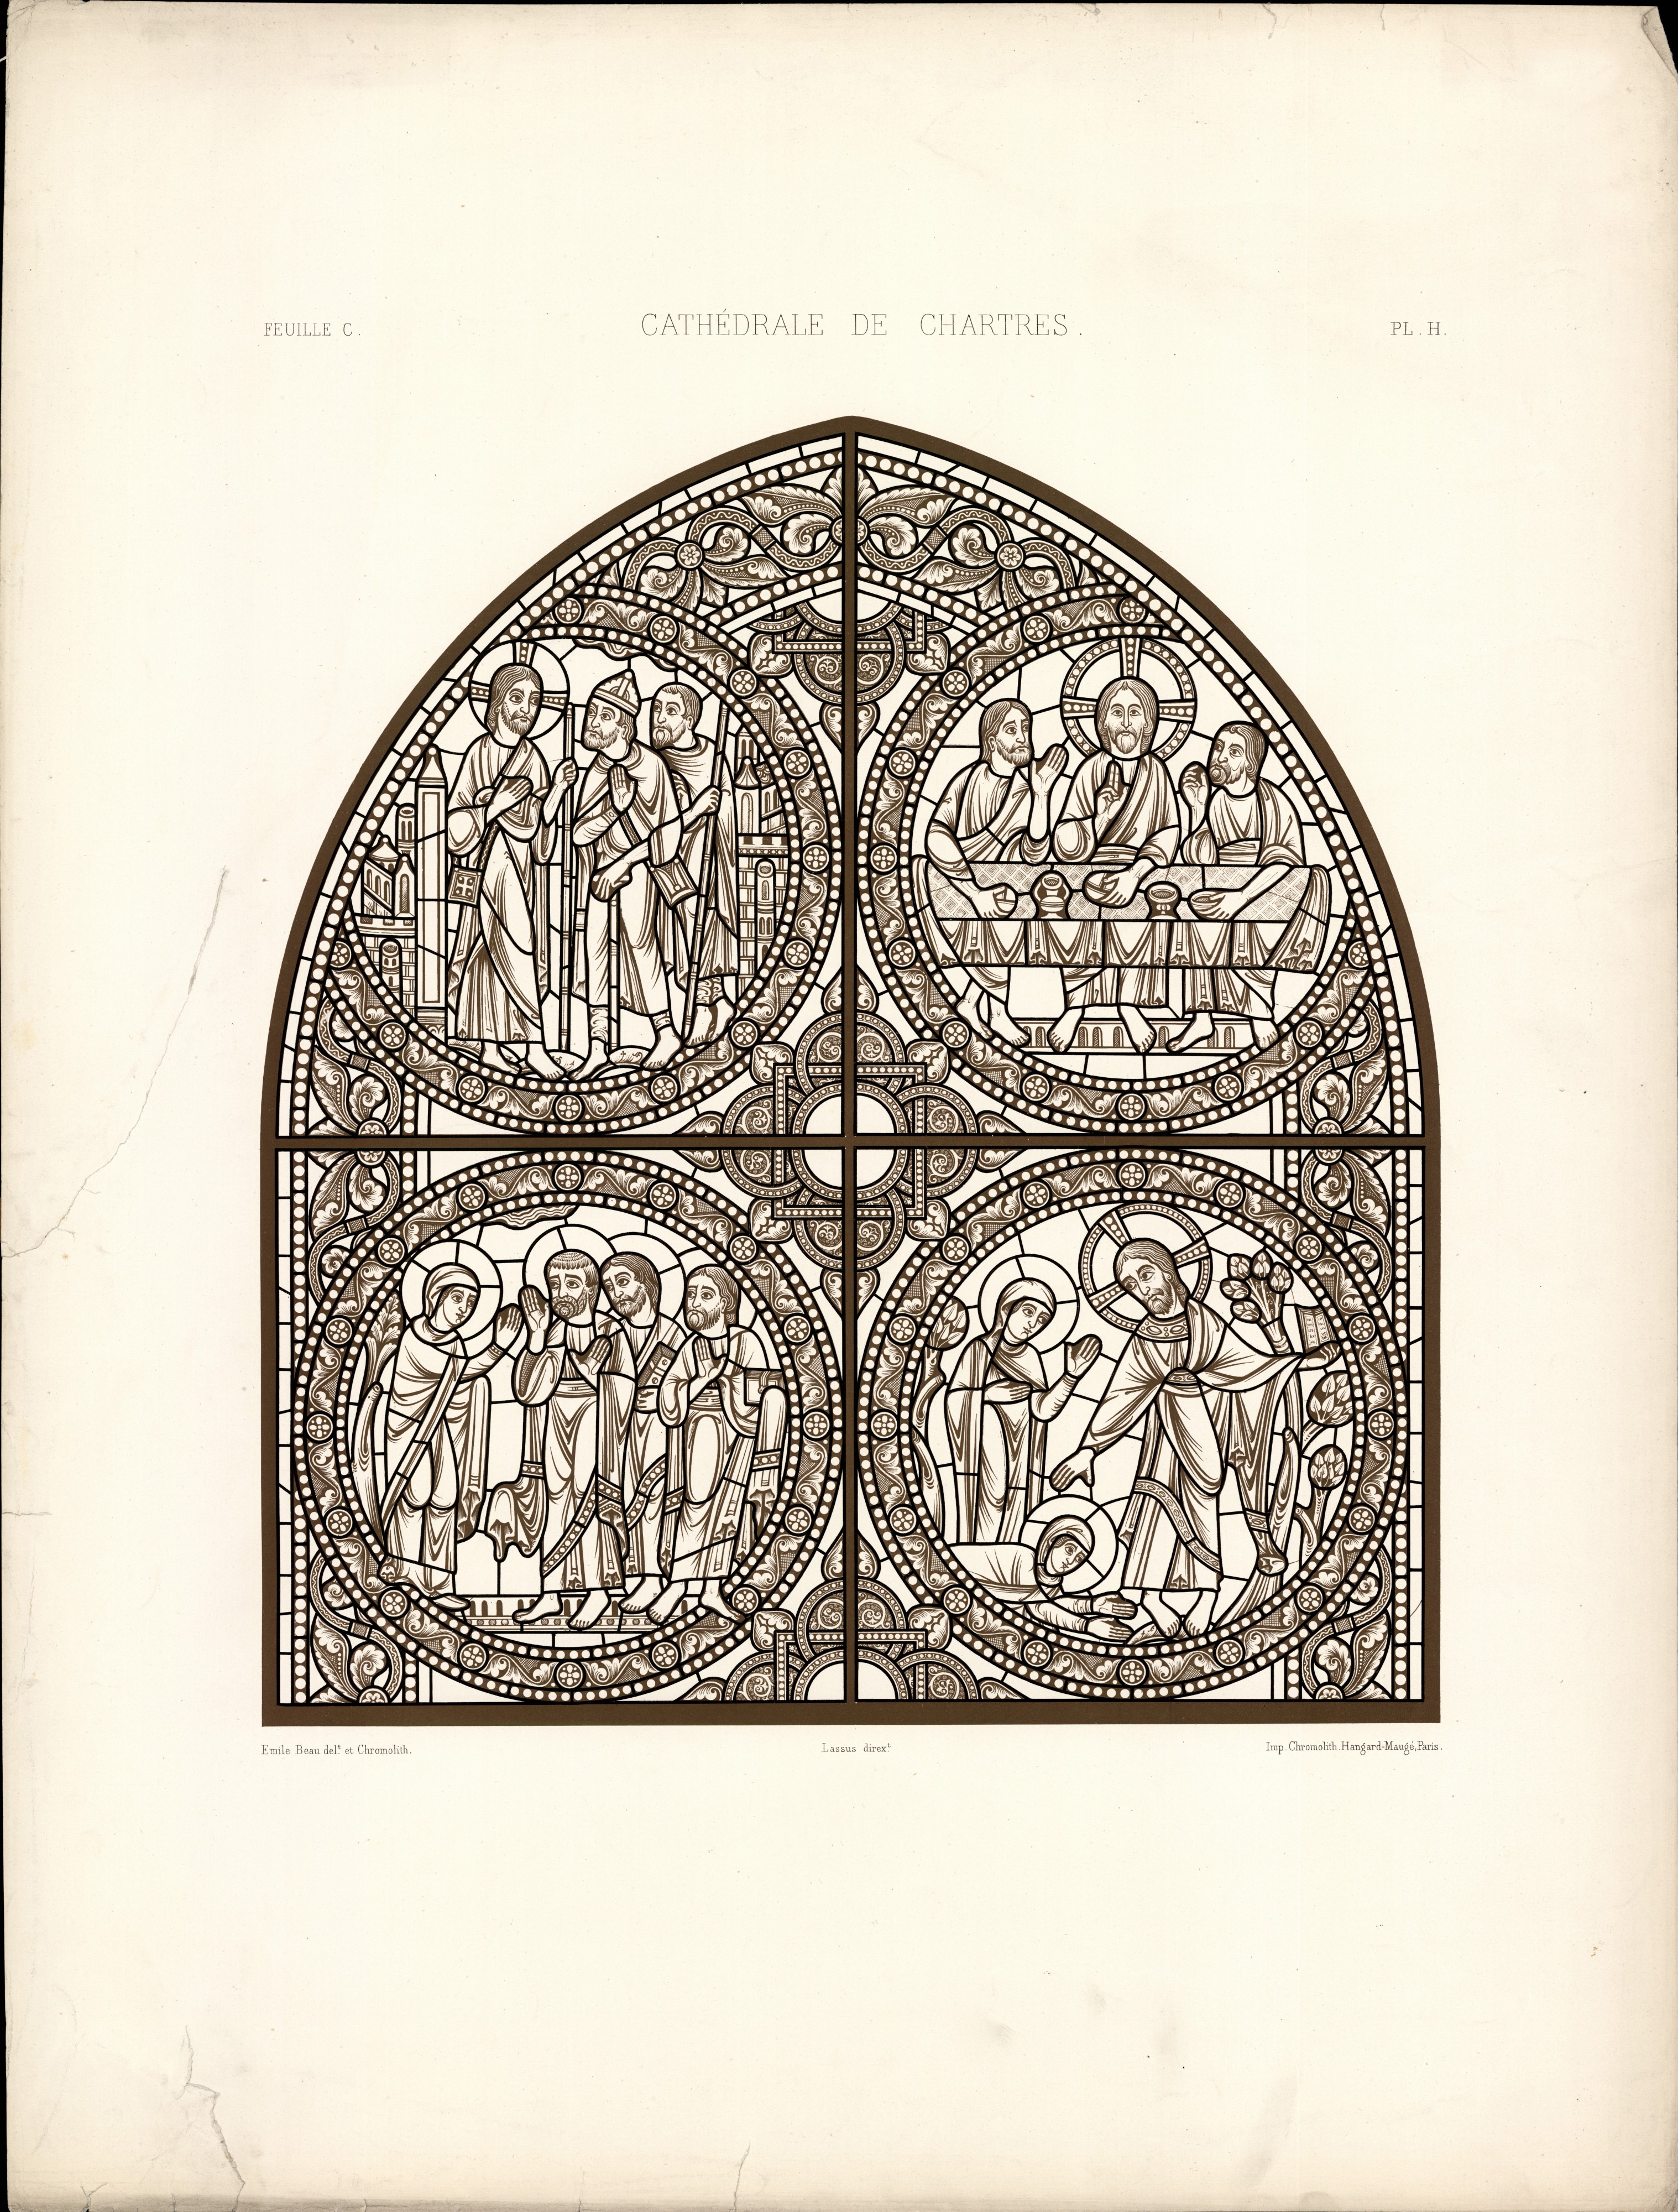 Monografie de la Cathedrale de Chartres - Atlas - Vitrail de la passion de Jesus Christ - Plan H - Feuille C